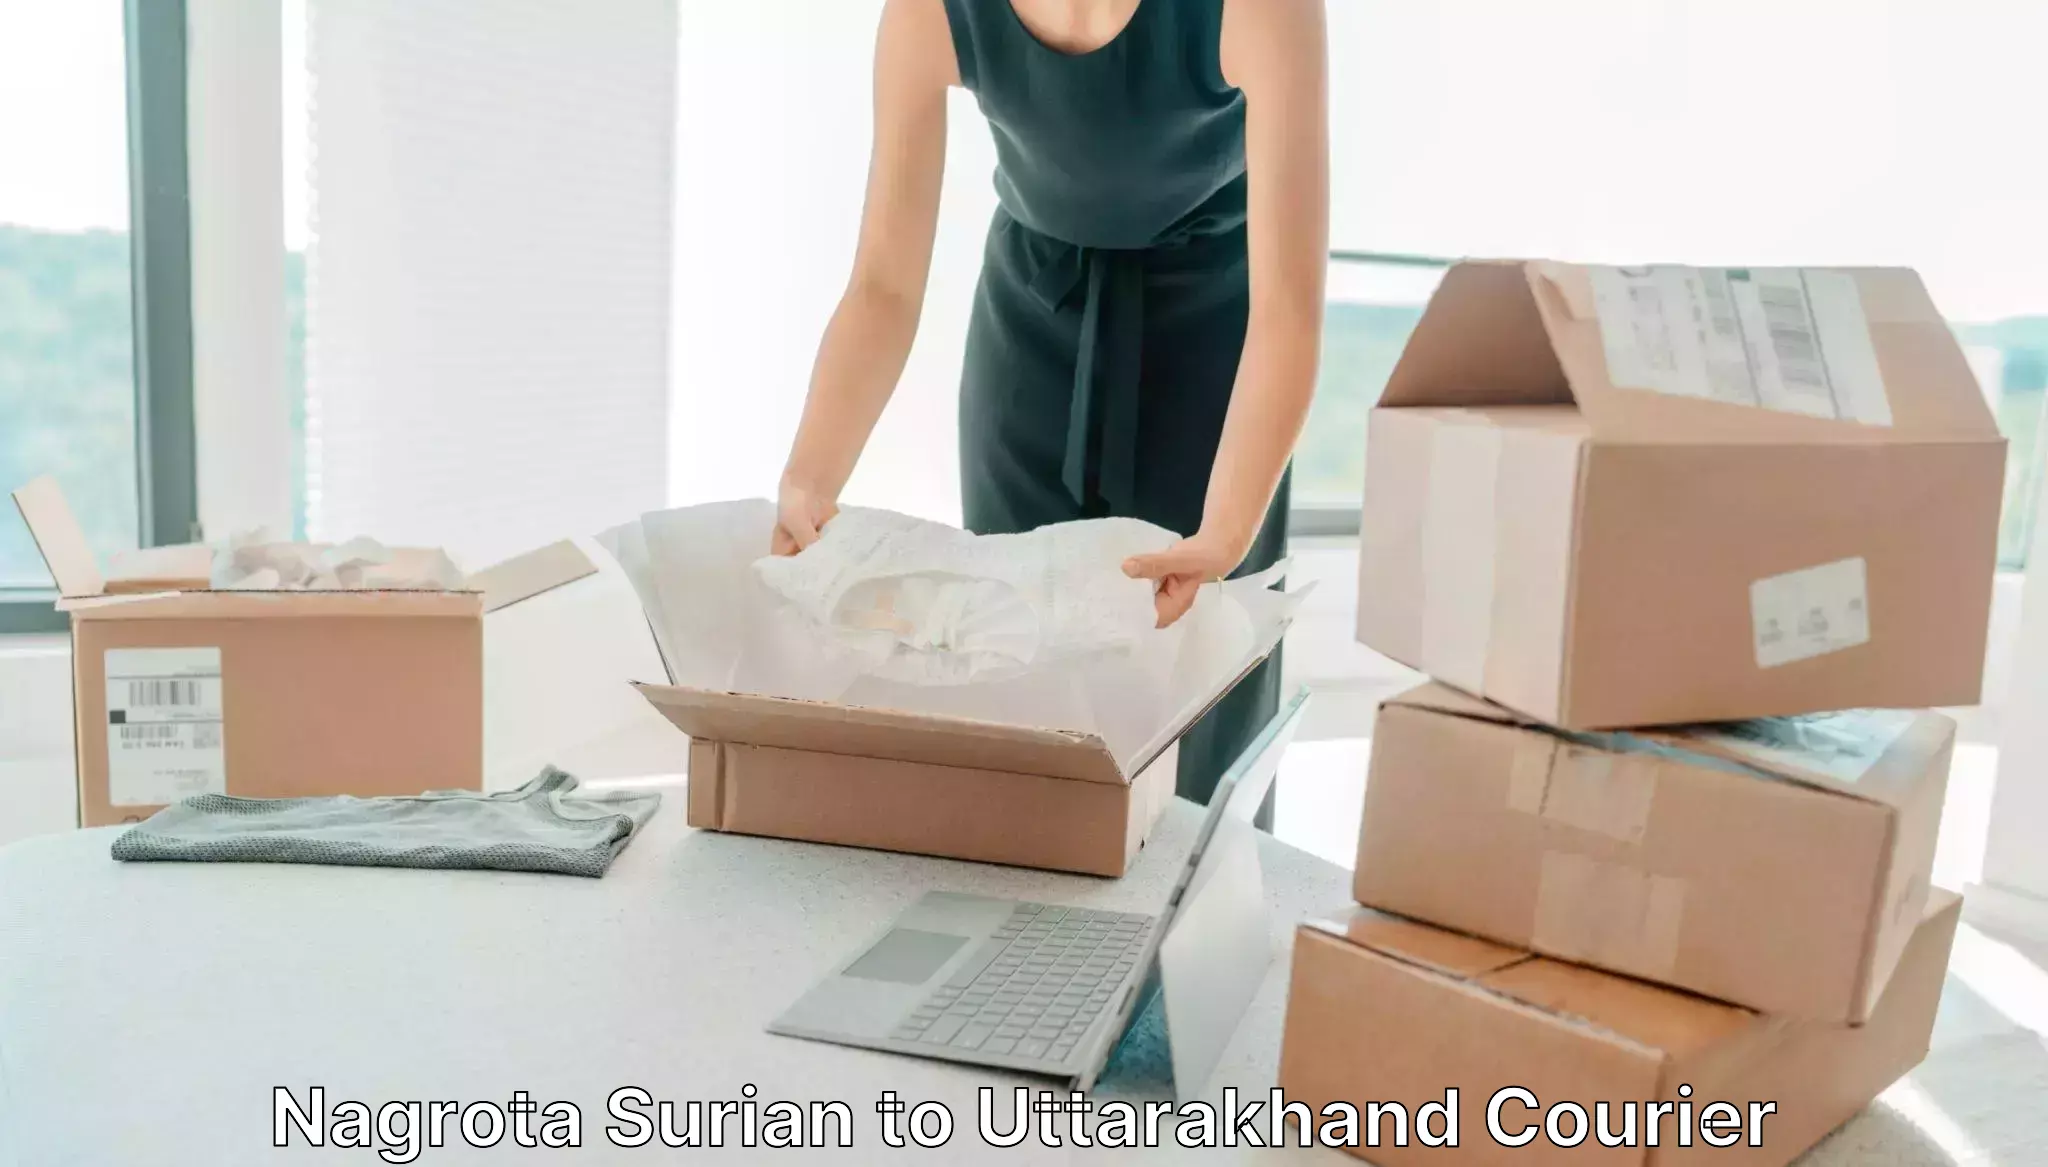 Modern delivery technologies Nagrota Surian to Uttarakhand